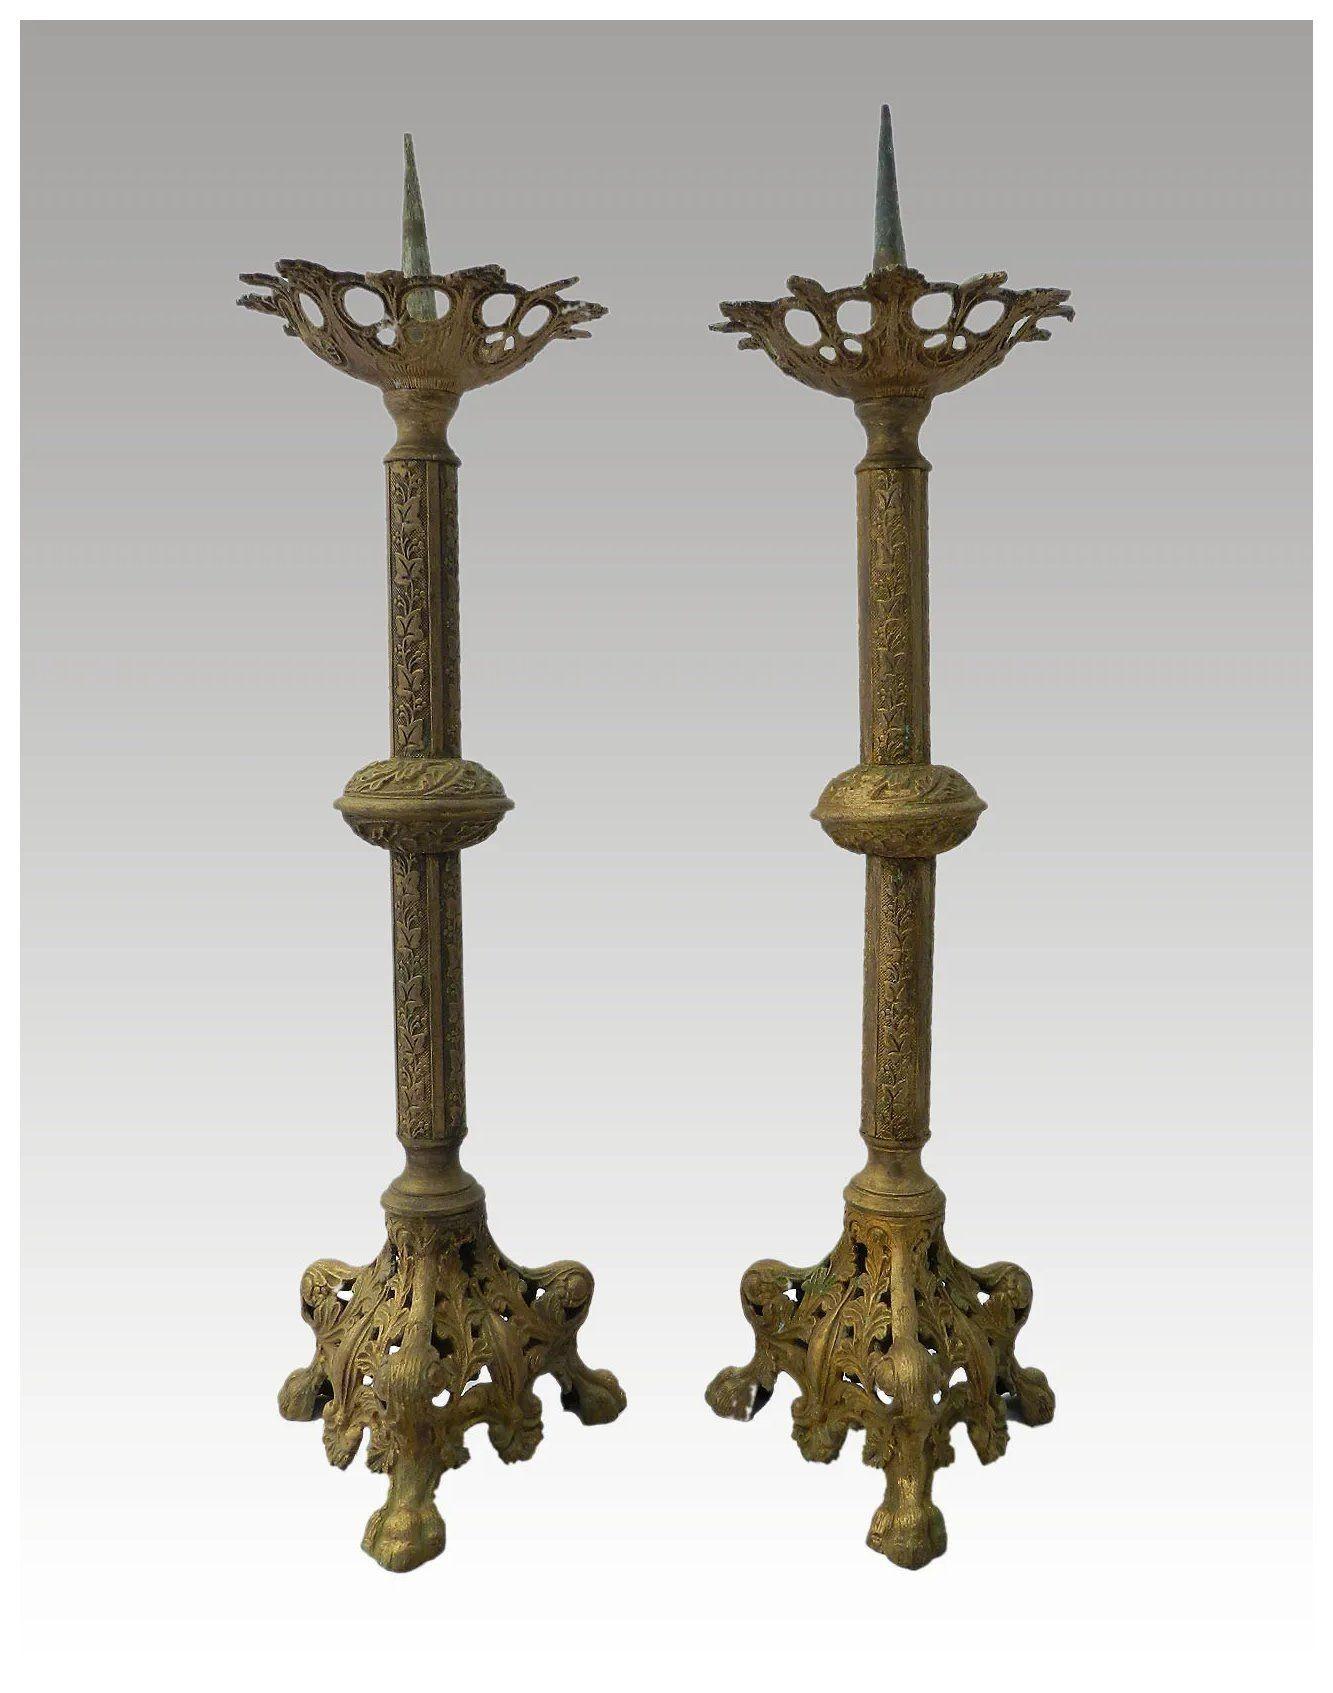 Paar französische Pricketstöcke 19. Jahrhundert
wir haben auch ein anderes Paar von diesen, die übereinstimmen separat aufgeführt
Altarstäbchen
Vergoldetes Metall
Aus einer französischen Schlosskapelle
Guter antiker gebrauchter Zustand mit den